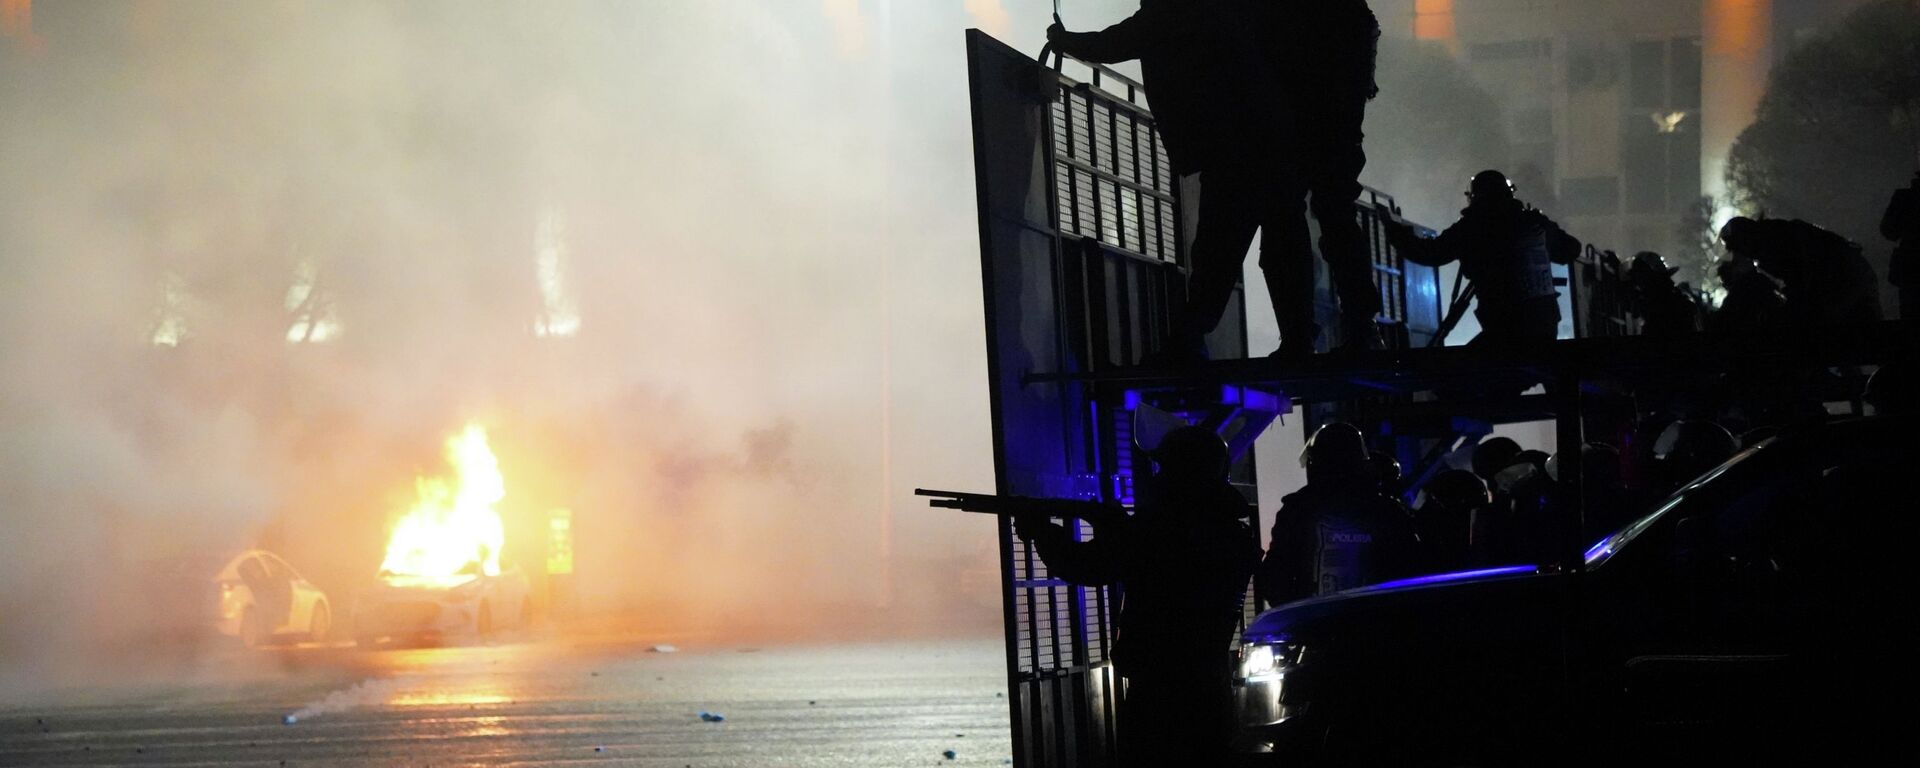 Полицейская машина горит, когда ОМОН готовится остановить демонстрантов в центре Алматы, Казахстан, среда, 5 января 2022 г.  - Sputnik Казахстан, 1920, 16.08.2022